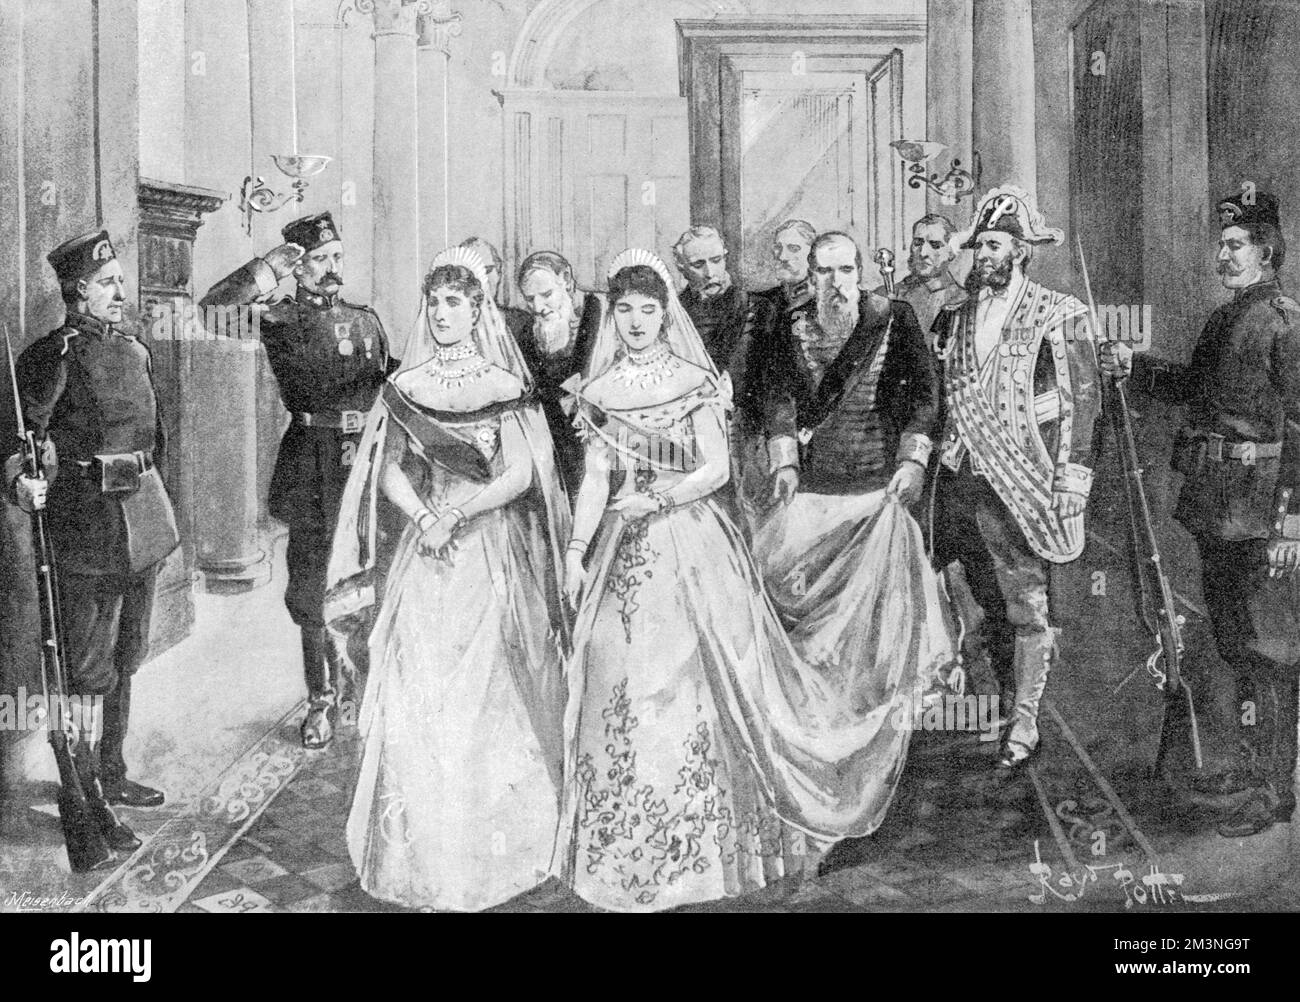 La Granduchessa Alexandra Feodorovna, Principessa Alix d'Assia, la sposa imperiale, arriva al Palazzo d'Inverno per sposare l'imperatore Nicola II Essa è accompagnata dalla vedova Imperatrice, la consorte del successivo Imperatore Alessandro III Data: 26th novembre 1894 Foto Stock